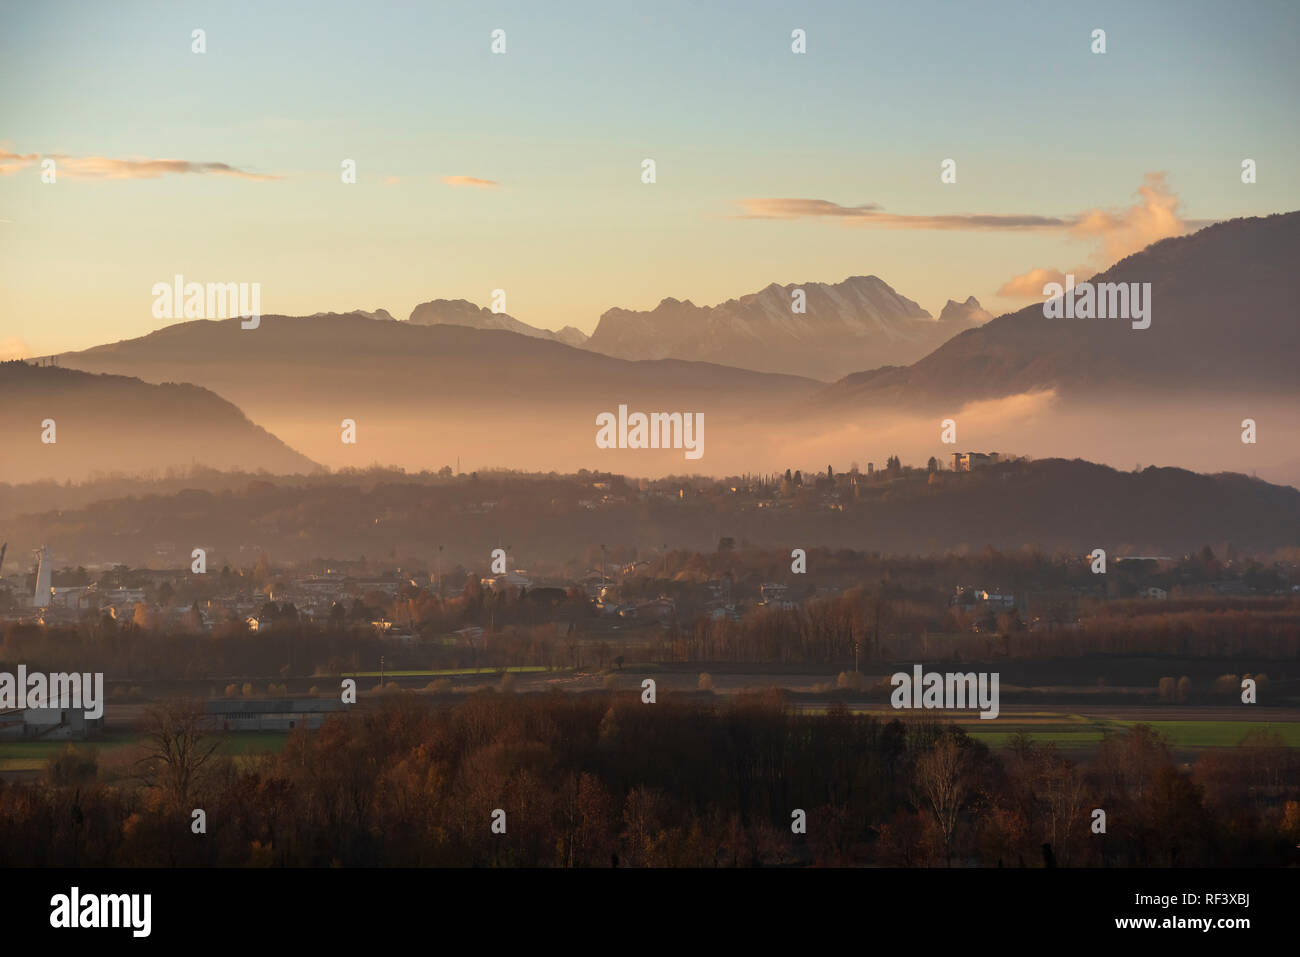 Vista panoramica di Majano, il Castello di Susans (Udine - Italia) e il paesaggio circostante, con il Monte Caserine e Dolomiti Friulane in background. Foto Stock